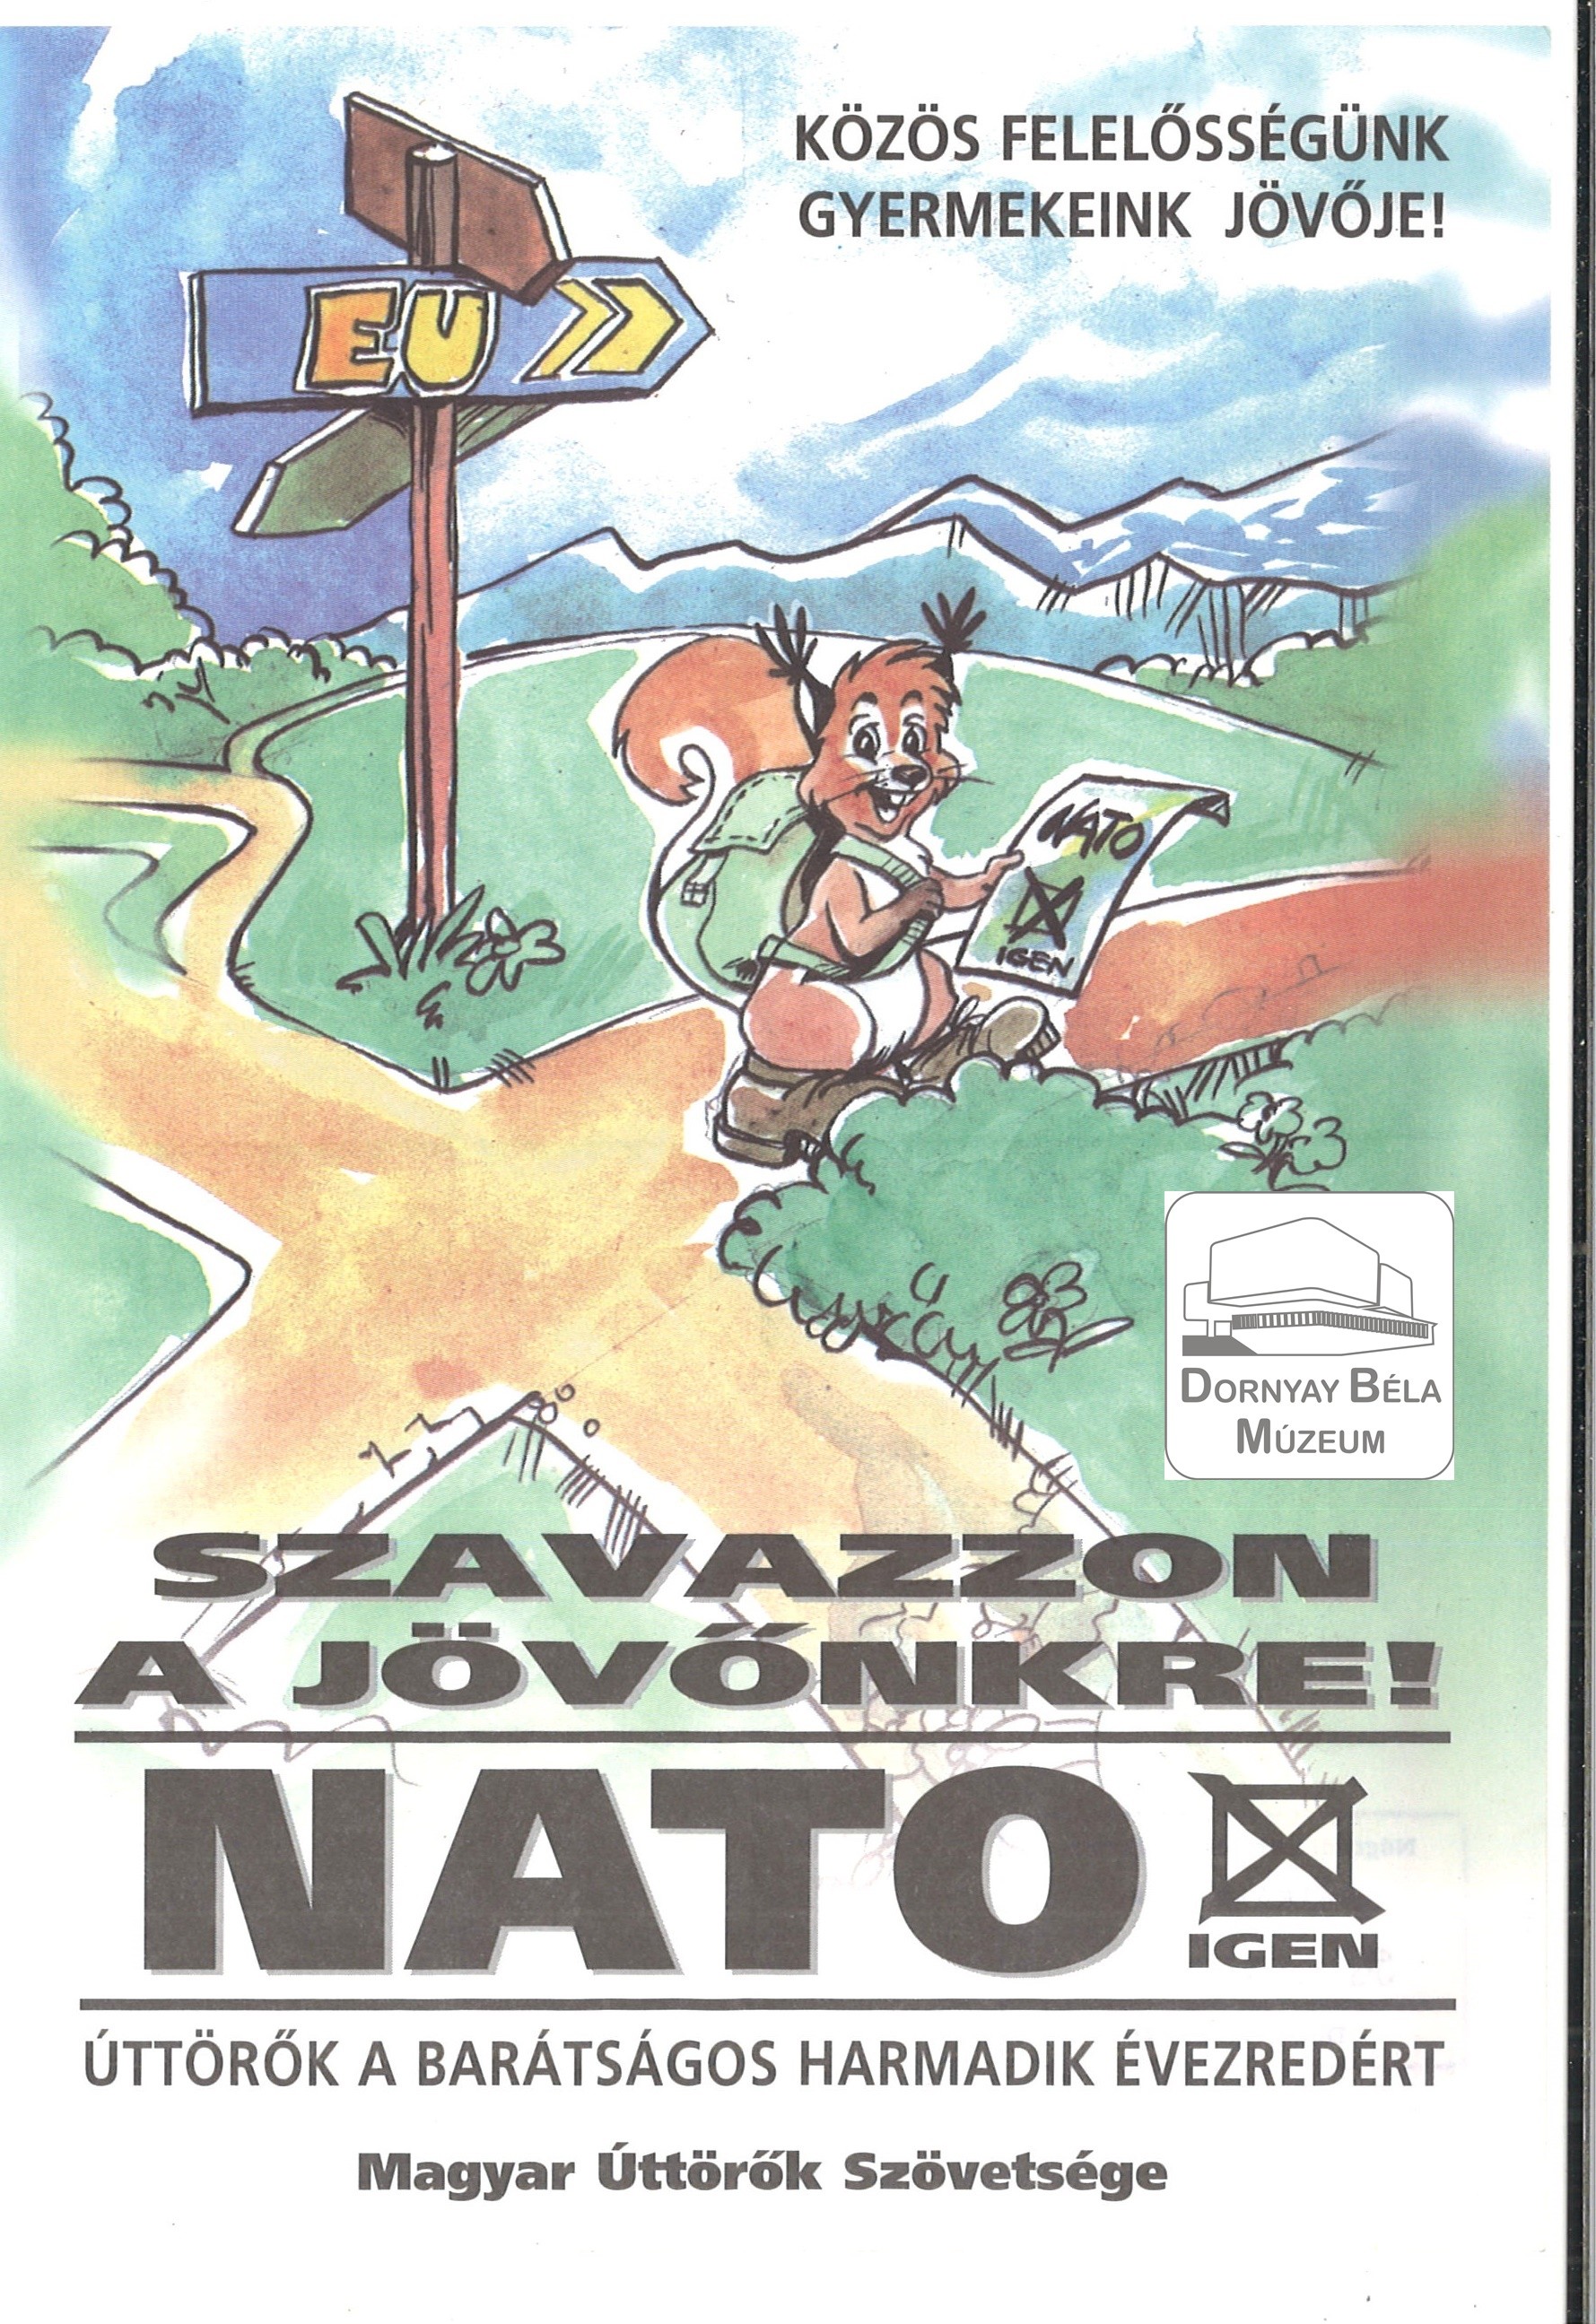 Szavazzon a jövőnkre! NATO-igen (Dornyay Béla Múzeum, Salgótarján CC BY-NC-SA)